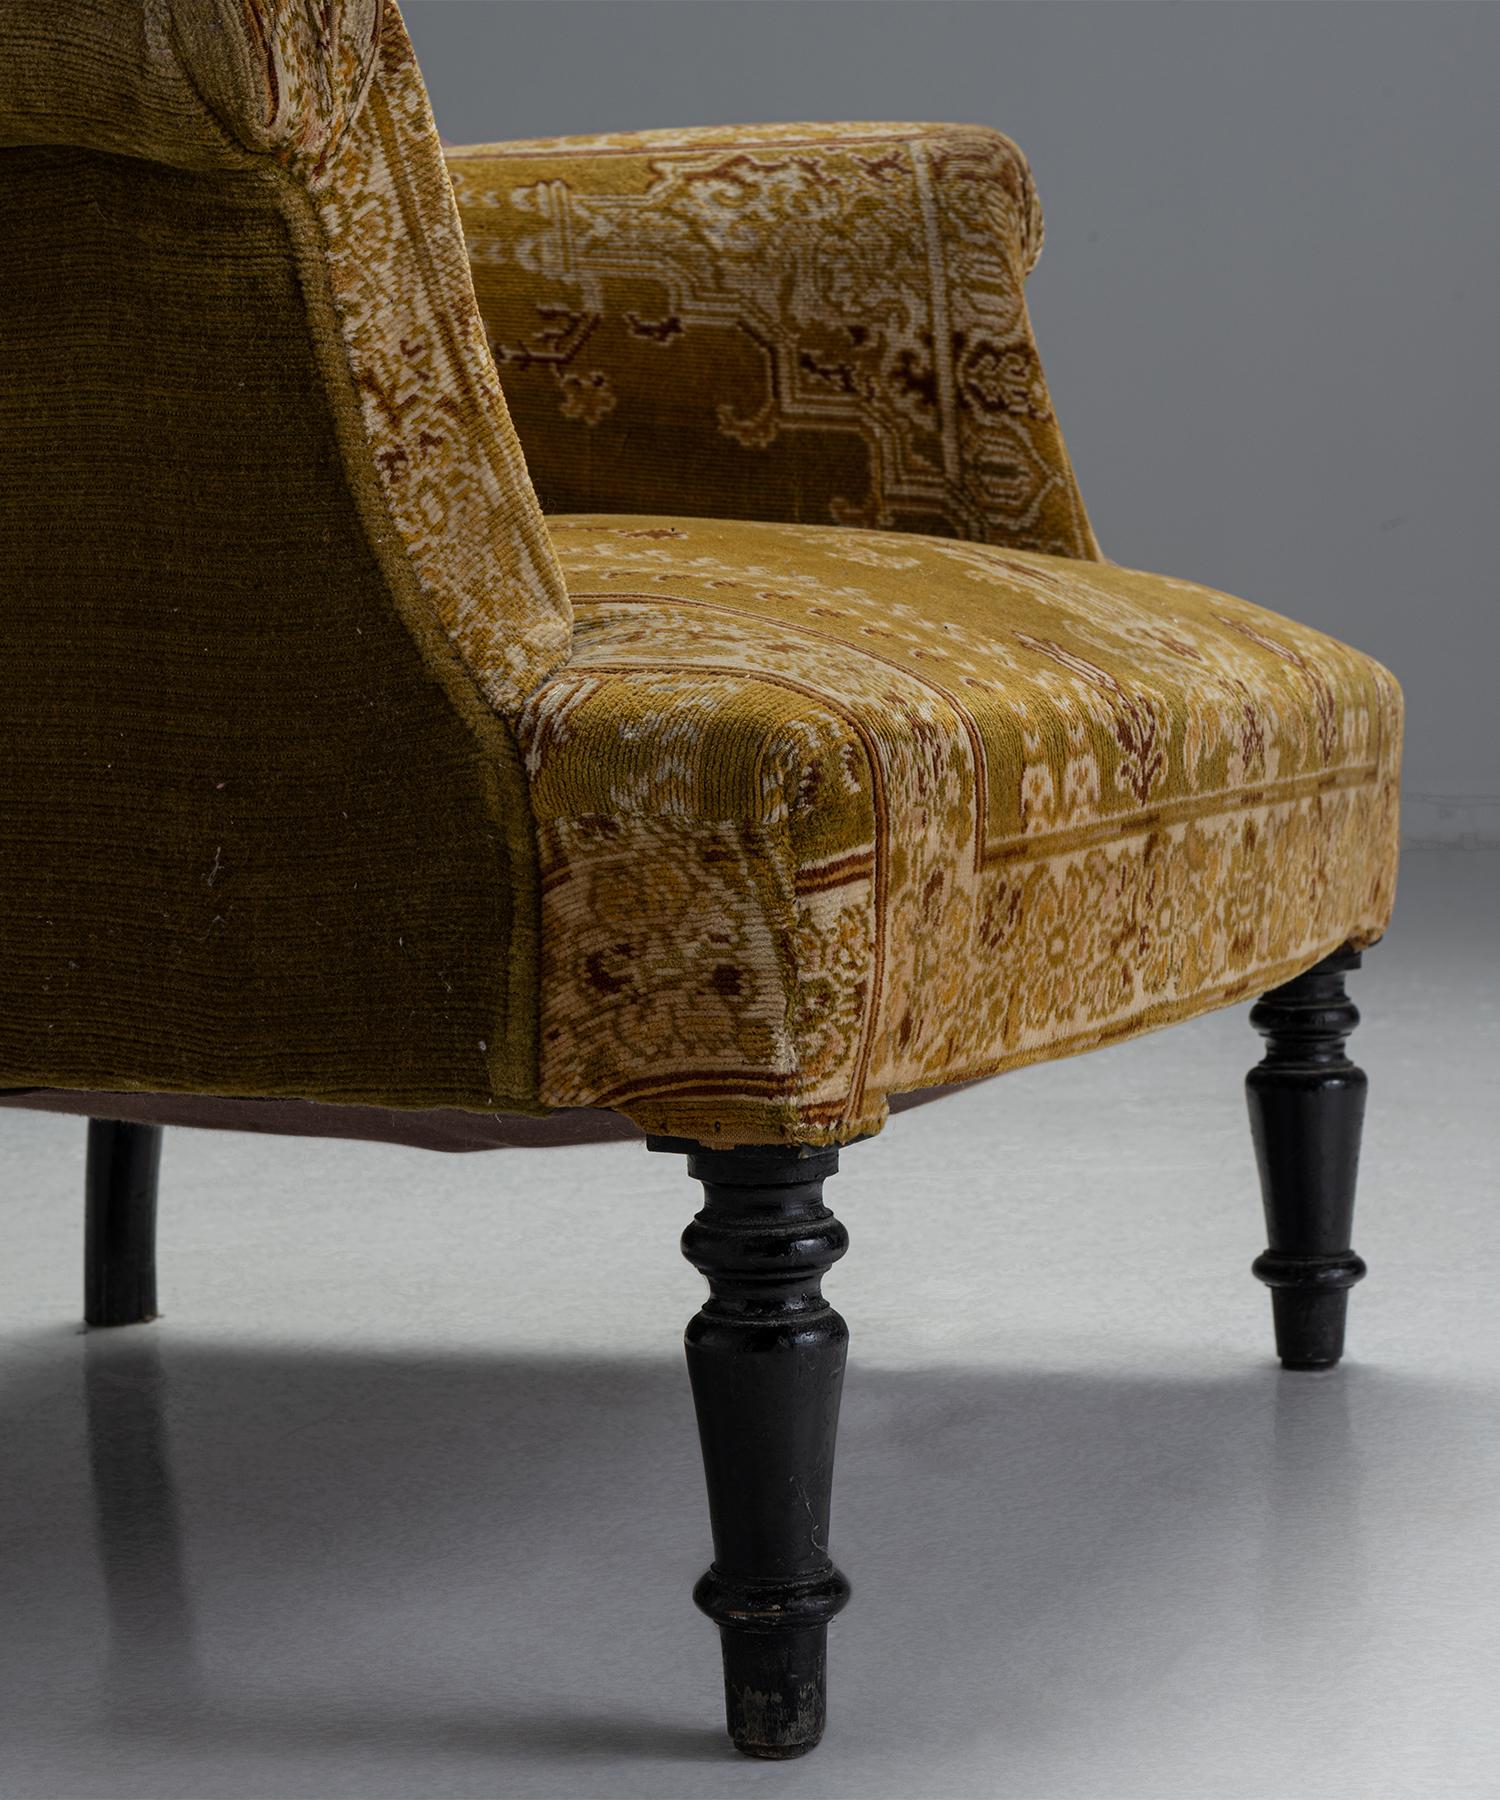 Velvet & carpet chair

France Circa 1880

Original upholstery on turned, ebonised legs.

Measures: 30.25